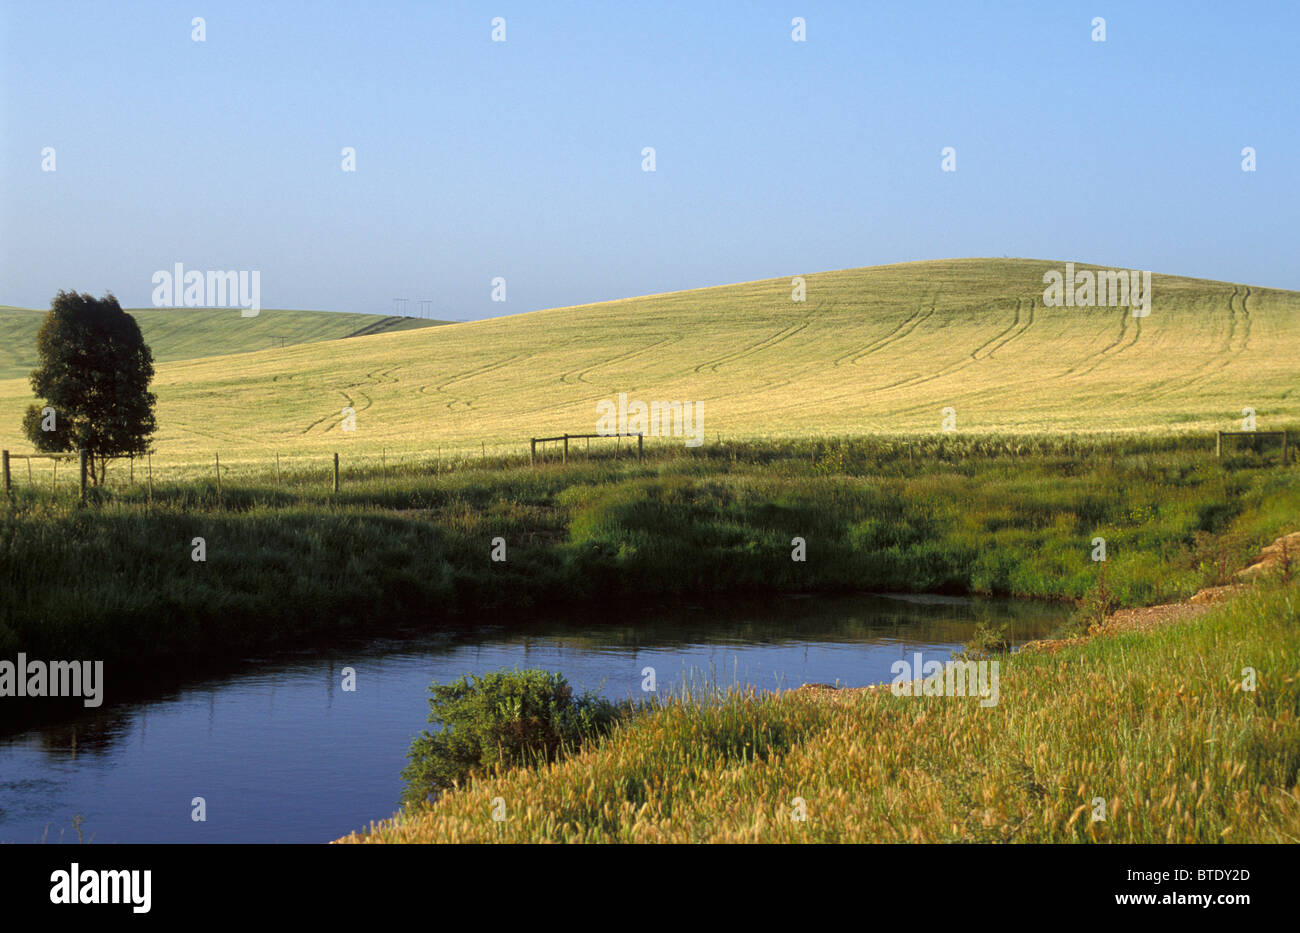 Malerische Landschaft mit sanften Hügeln und einem kleinen Damm im Vordergrund Stockfoto